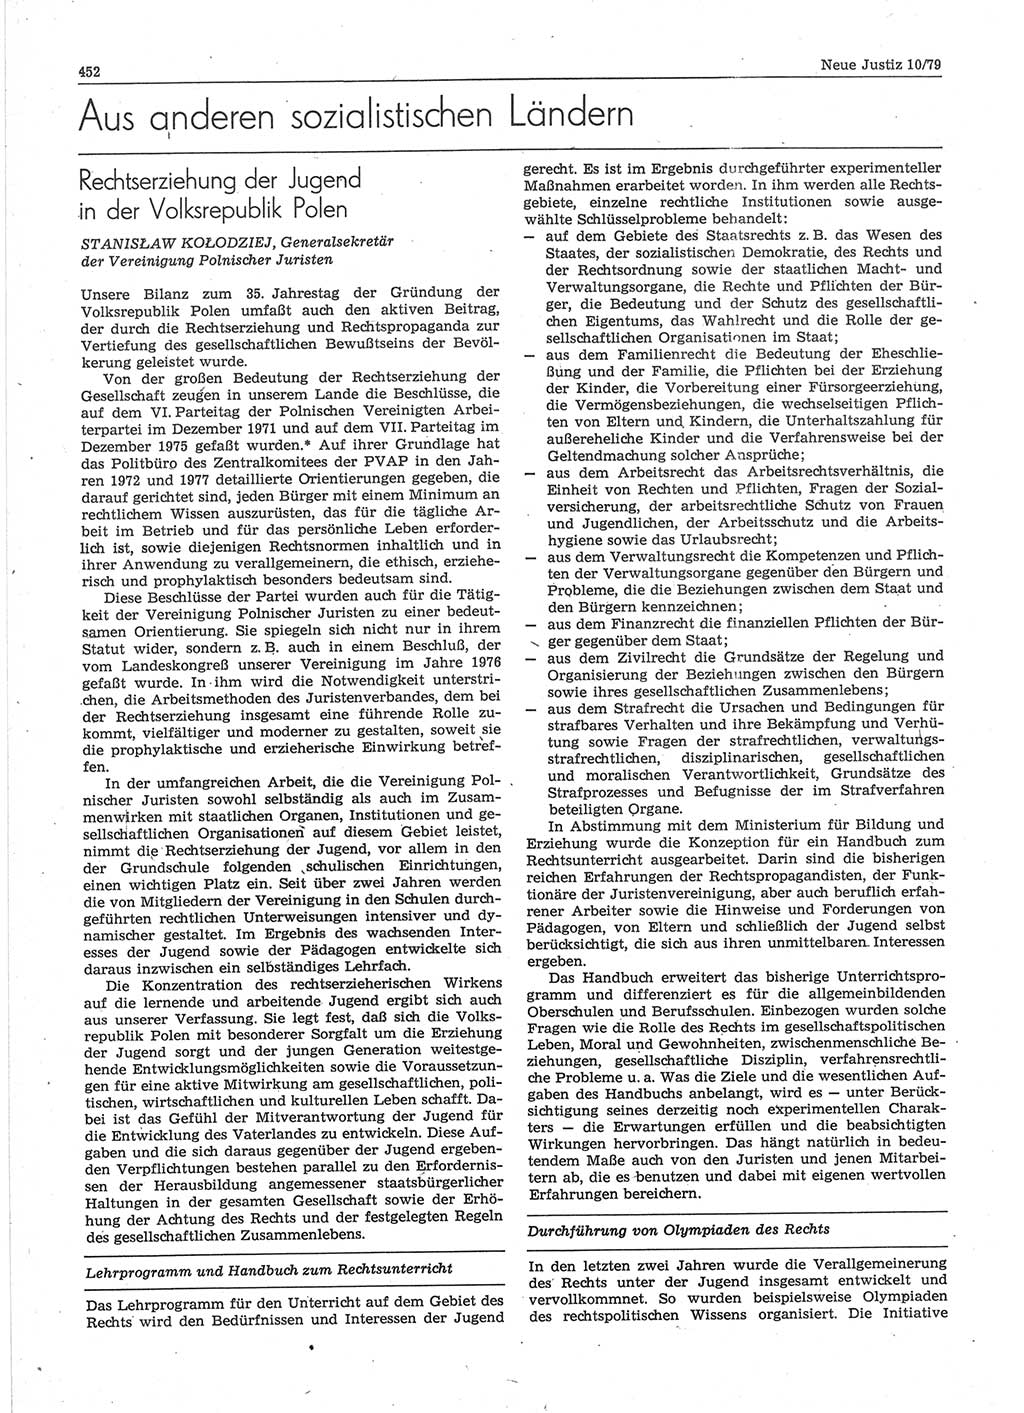 Neue Justiz (NJ), Zeitschrift für sozialistisches Recht und Gesetzlichkeit [Deutsche Demokratische Republik (DDR)], 33. Jahrgang 1979, Seite 452 (NJ DDR 1979, S. 452)